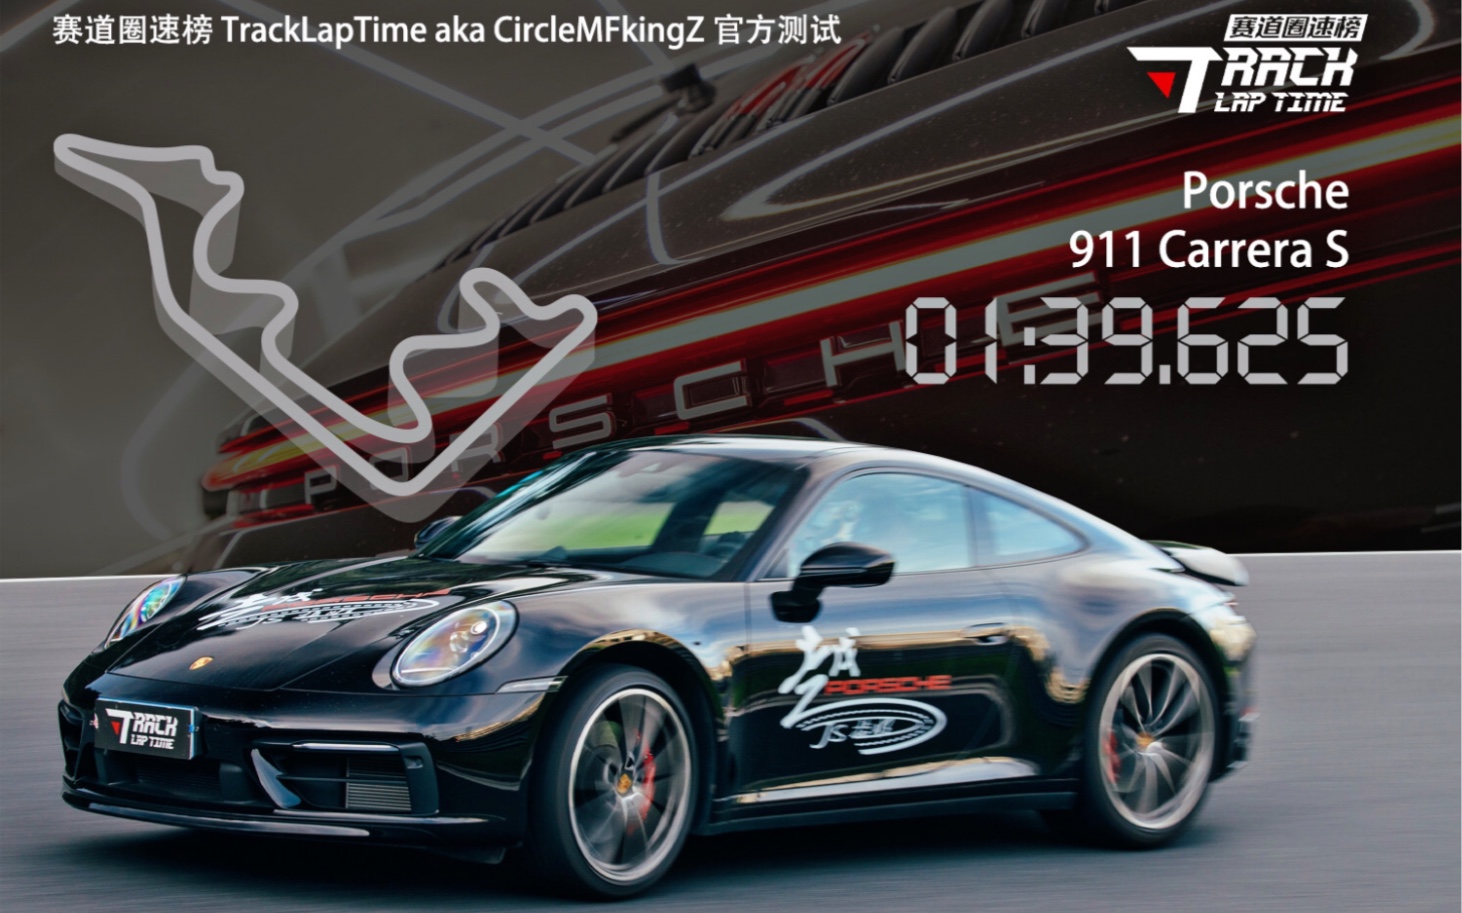 没有感情的杀手 赛道圈速榜 浙江国际赛车场@Porsche 911 Carrera S(992) 1'39.625